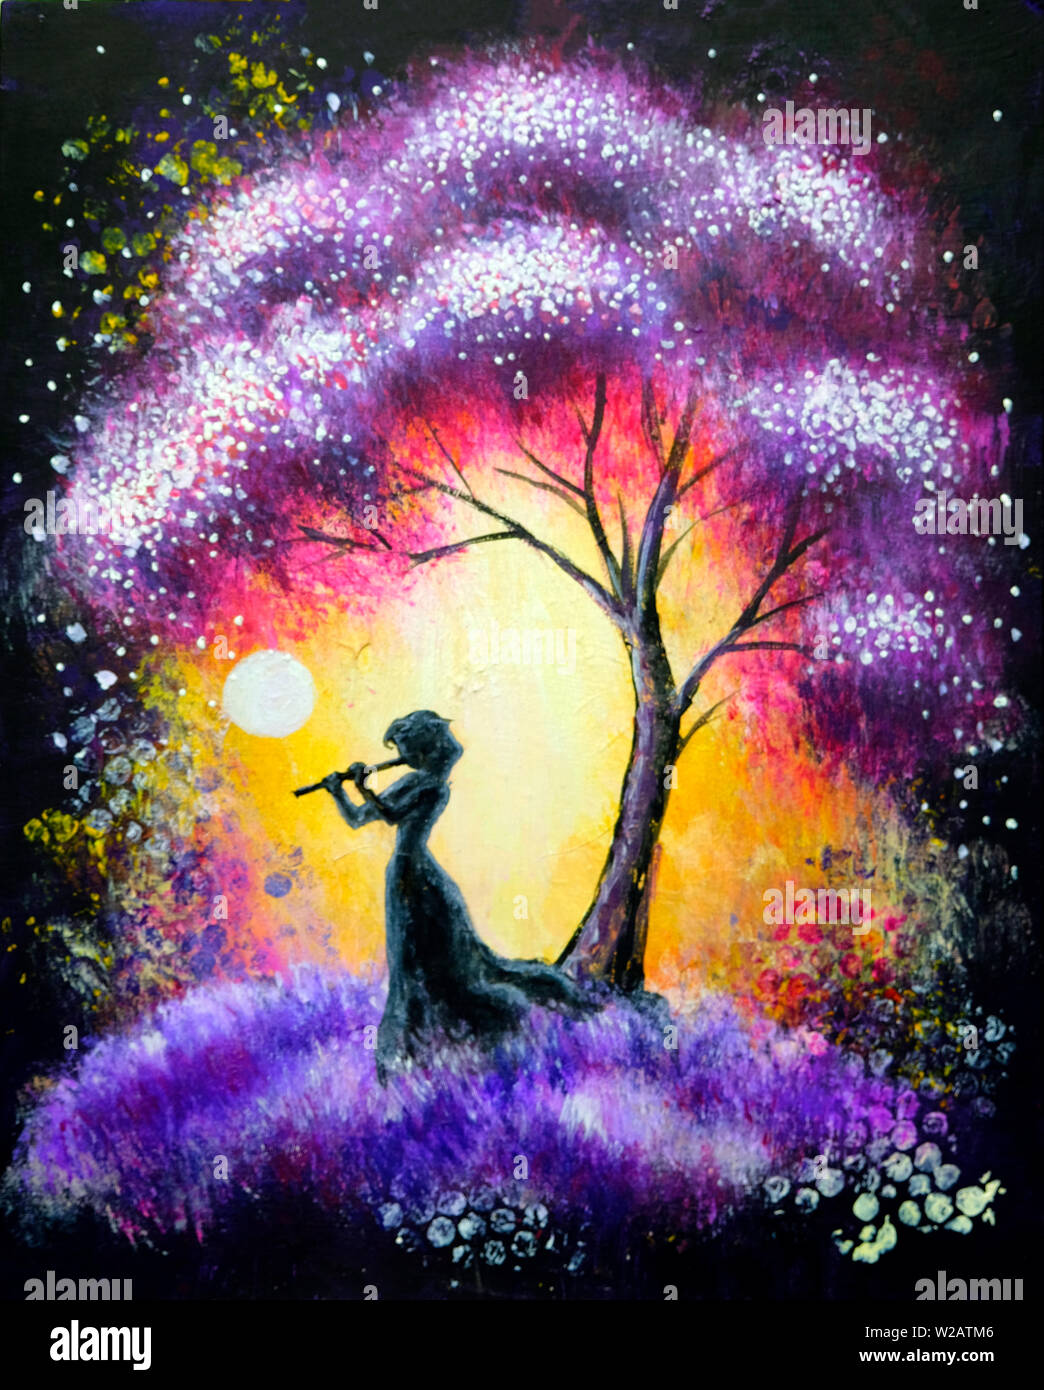 Paysage peinture huile acrylique violet coloré, arbre à la nuit avec une belle femme. Impressionisme, peinte à la main paysage extérieur. Banque D'Images